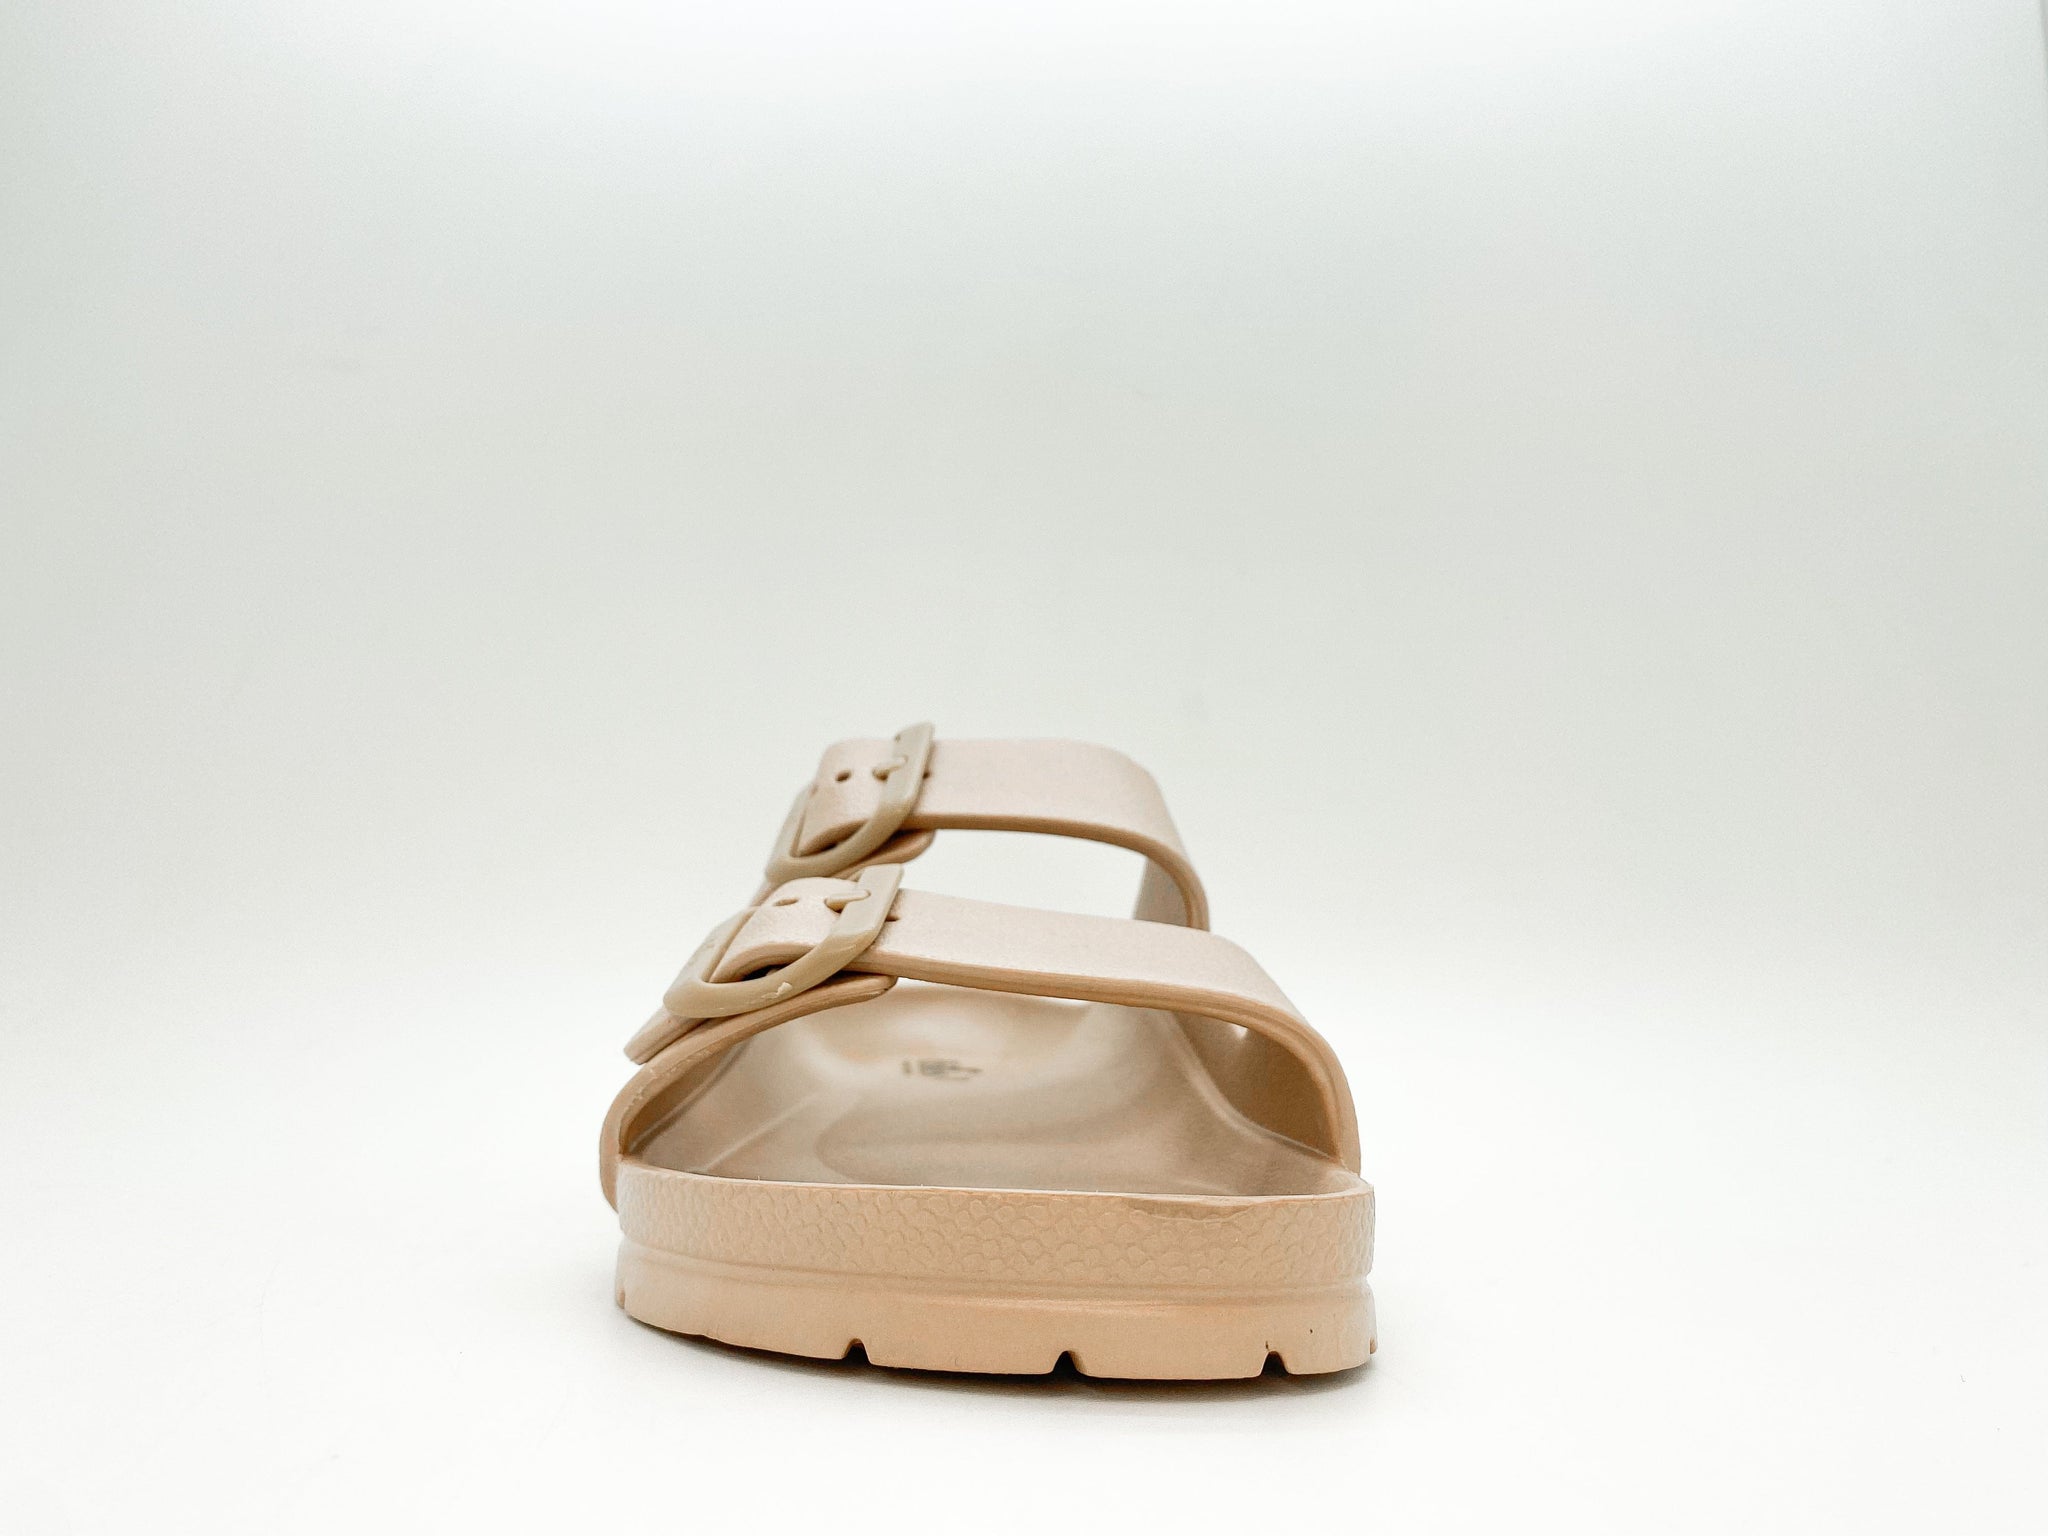 NAT 2 fodtøj thies 1856 ® Ecofoam Sandal bronze bæredygtig mode etisk mode